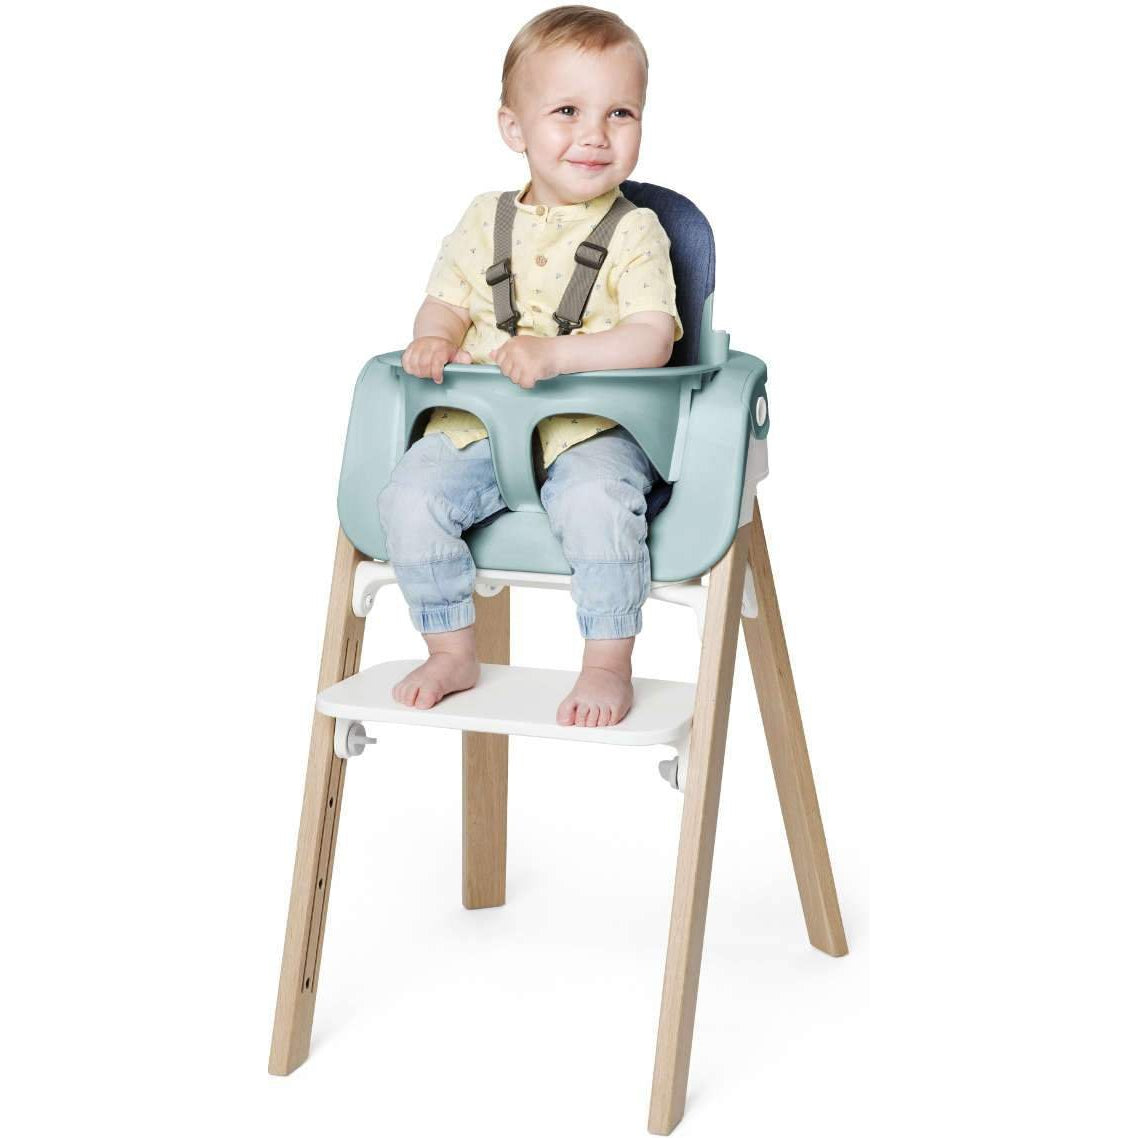 Stokke Steps High Chair - Twinkle Twinkle Little One